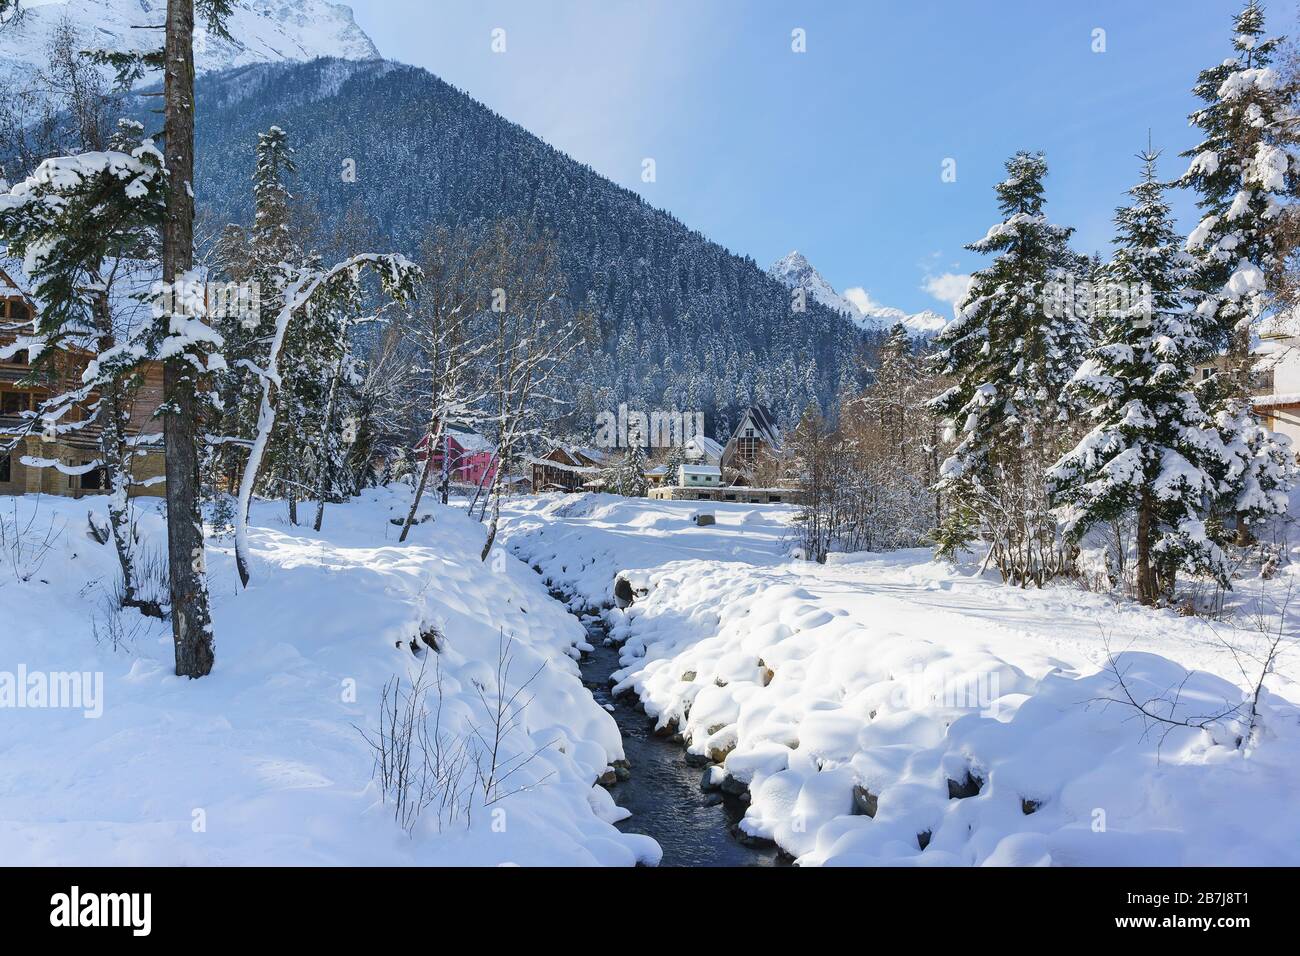 Channel Alibek in the ski resort village of Dombay in Karachay-Cherkessia. Sunny winter day Stock Photo